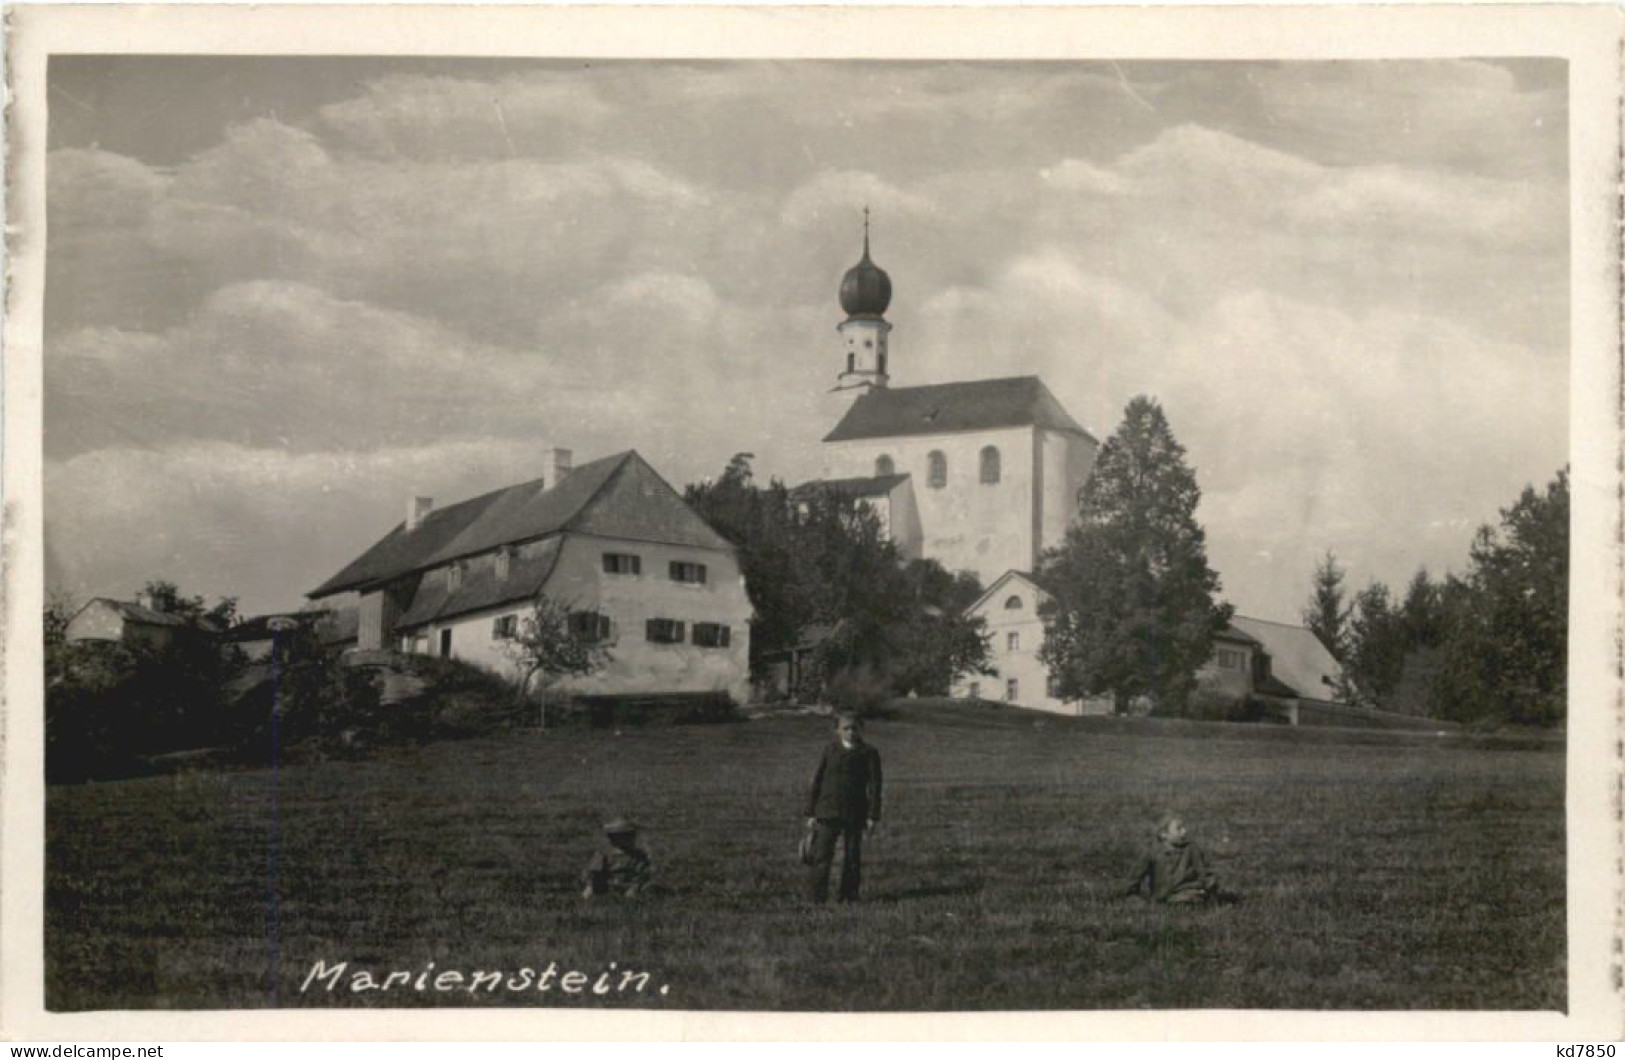 Marienstein - Falkenstein - Cham